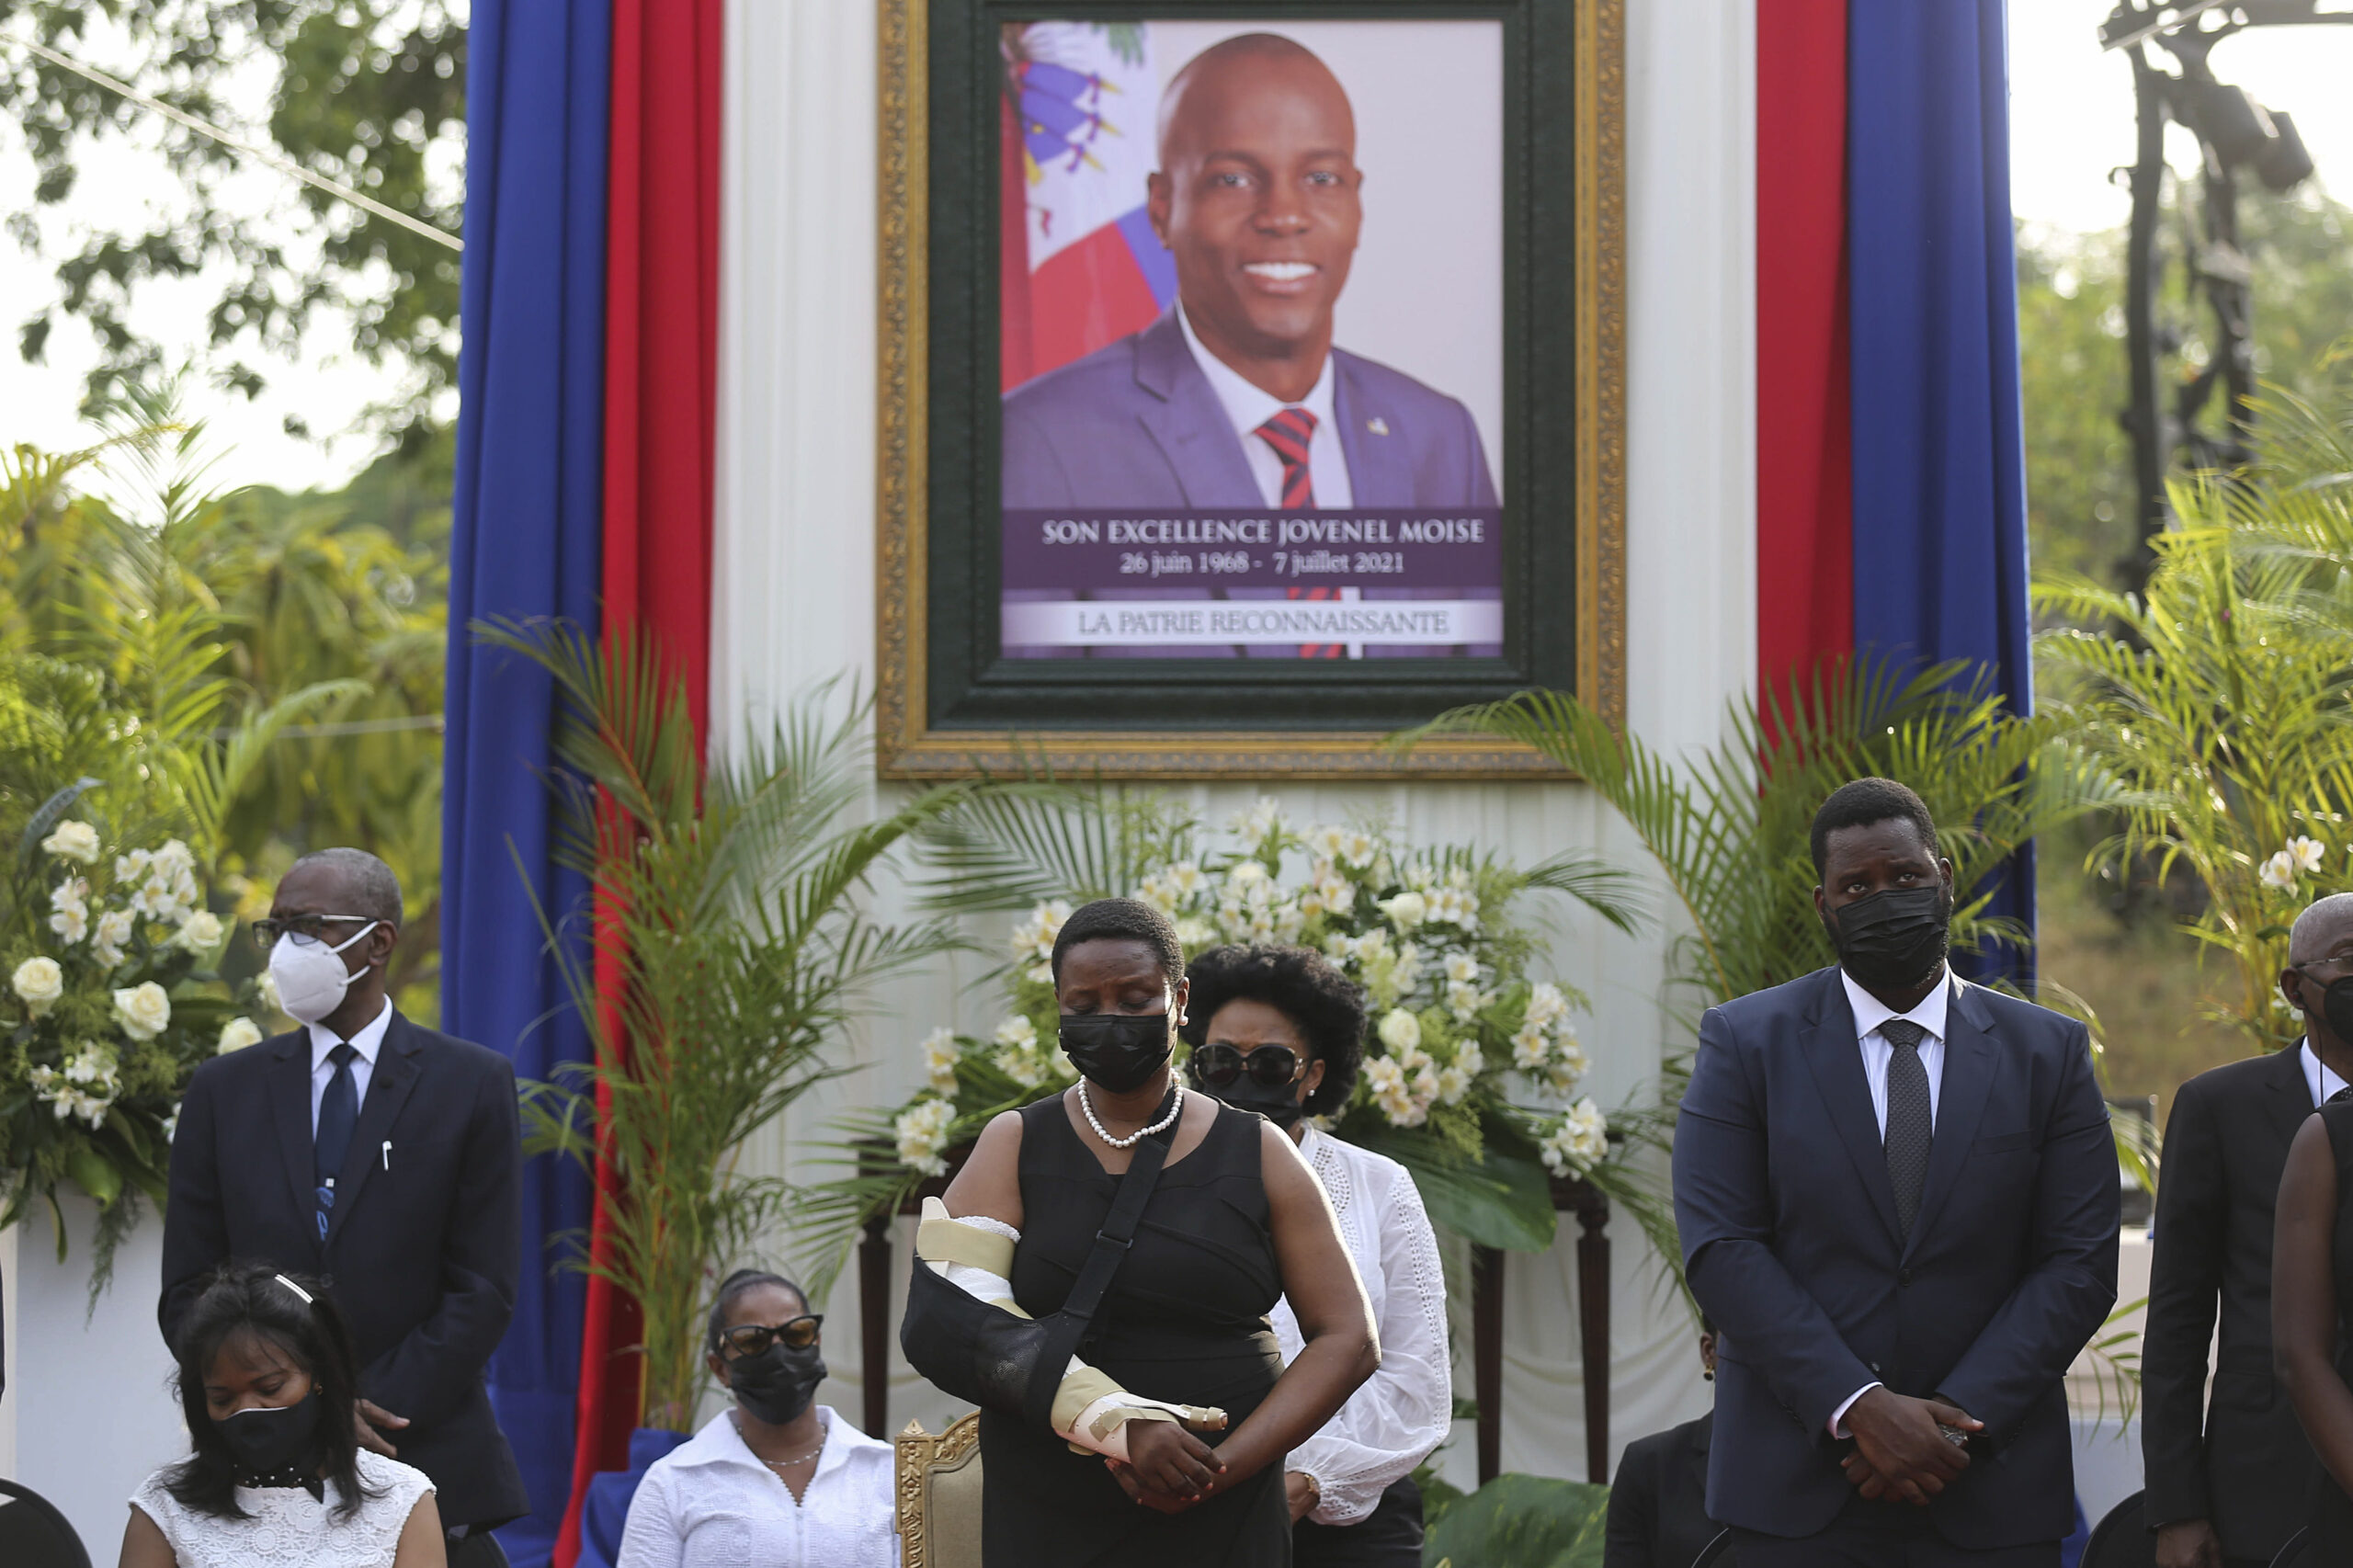 Martine Moïse ist die Witwe von Haitis Ex-Präsidenten Jovenel Moïse, der auf einem Foto im Hintergrund zu sehen ist. (Archivbild)